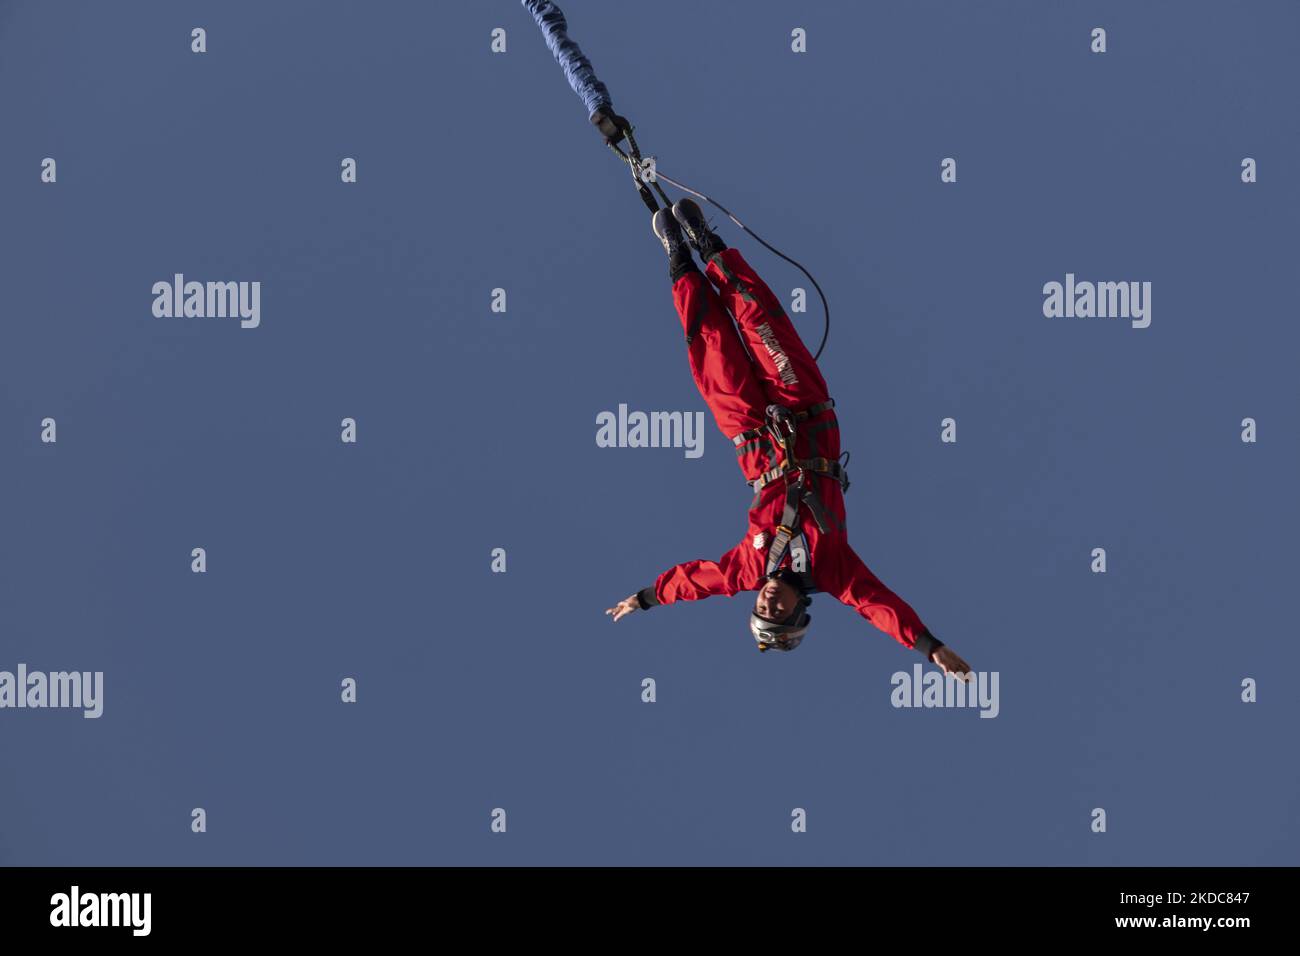 Die iranische Bungee-Frau Sogand Salari-30 führt am 15. Juni 2022 beim ersten akrobatischen Bungee-Jumping-Wettbewerb des Iran im Adrenaline Park im Nordwesten Teherans ein Bungee-Jumping von einem 40-Meter-Rig aus durch. Der erste akrobatische Bungee-Springen im Iran fand im Adrenaline Park im Nordwesten Teherans statt. (Foto von Morteza Nikoubazl/NurPhoto) Stockfoto